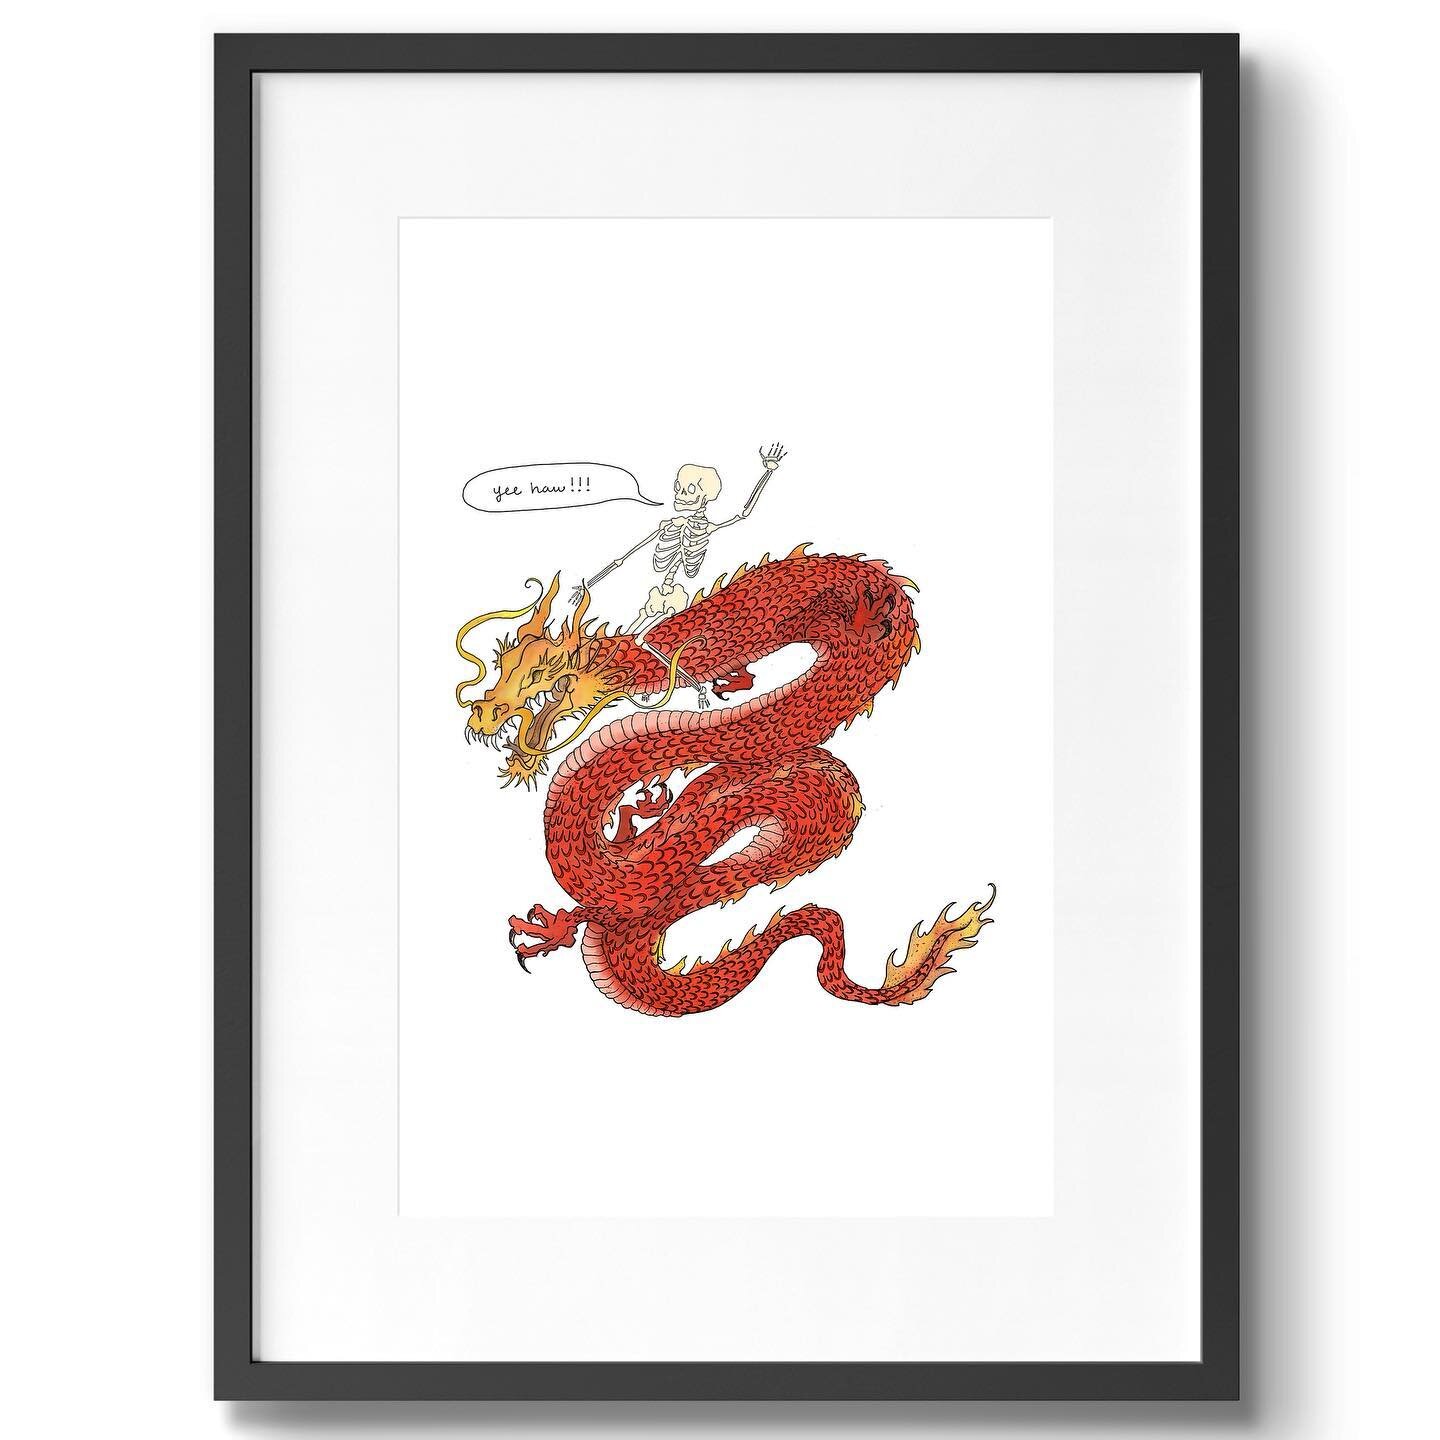 The Dragon cowboy. Prints on sale now. 🐉🤠